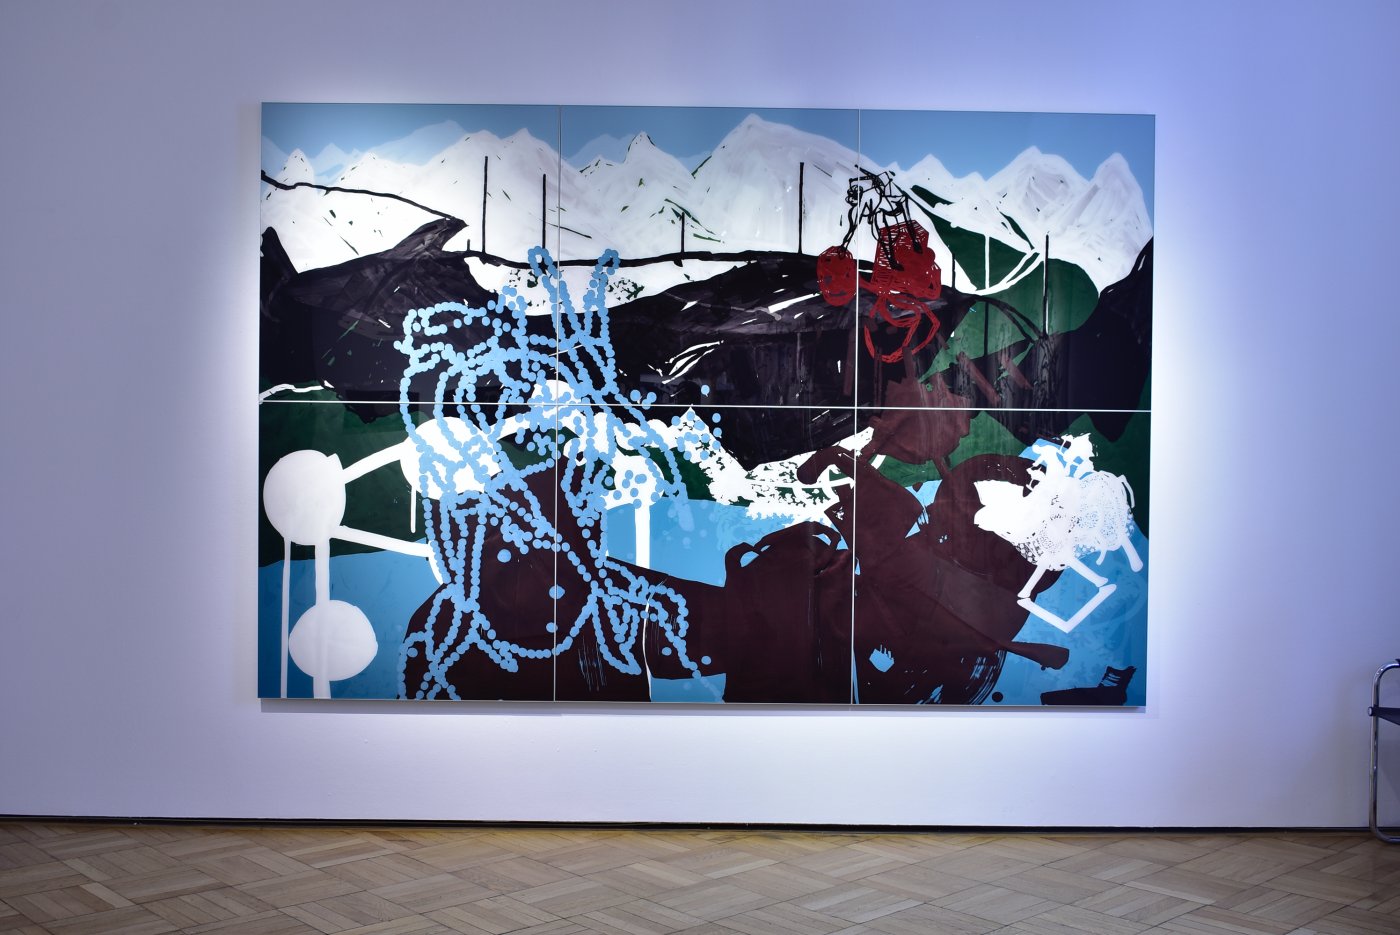 Installation image for Oliver Dorfer: Imagery - the dotporject, at Galerie Ernst Hilger